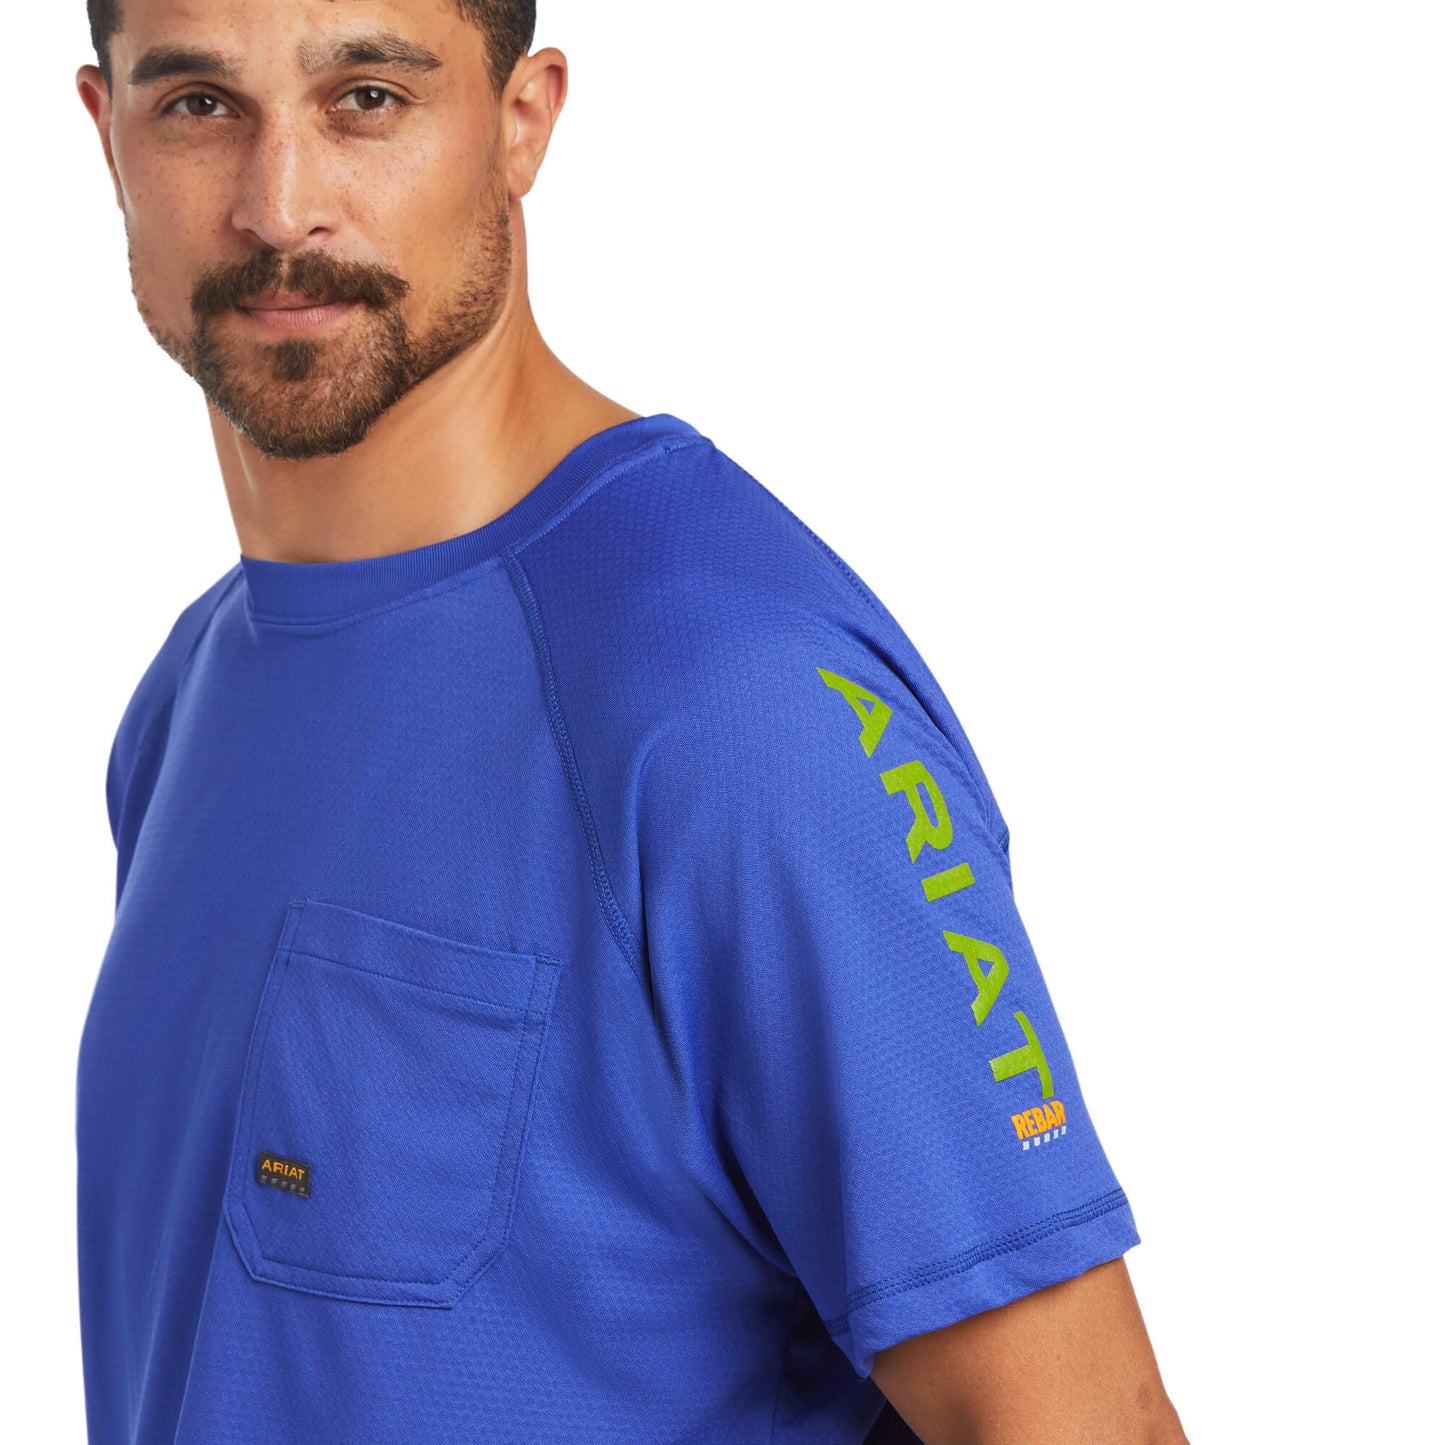 Ariat® Men's Rebar Heat Fighter Short Sleeve Blue T-Shirt 10039462